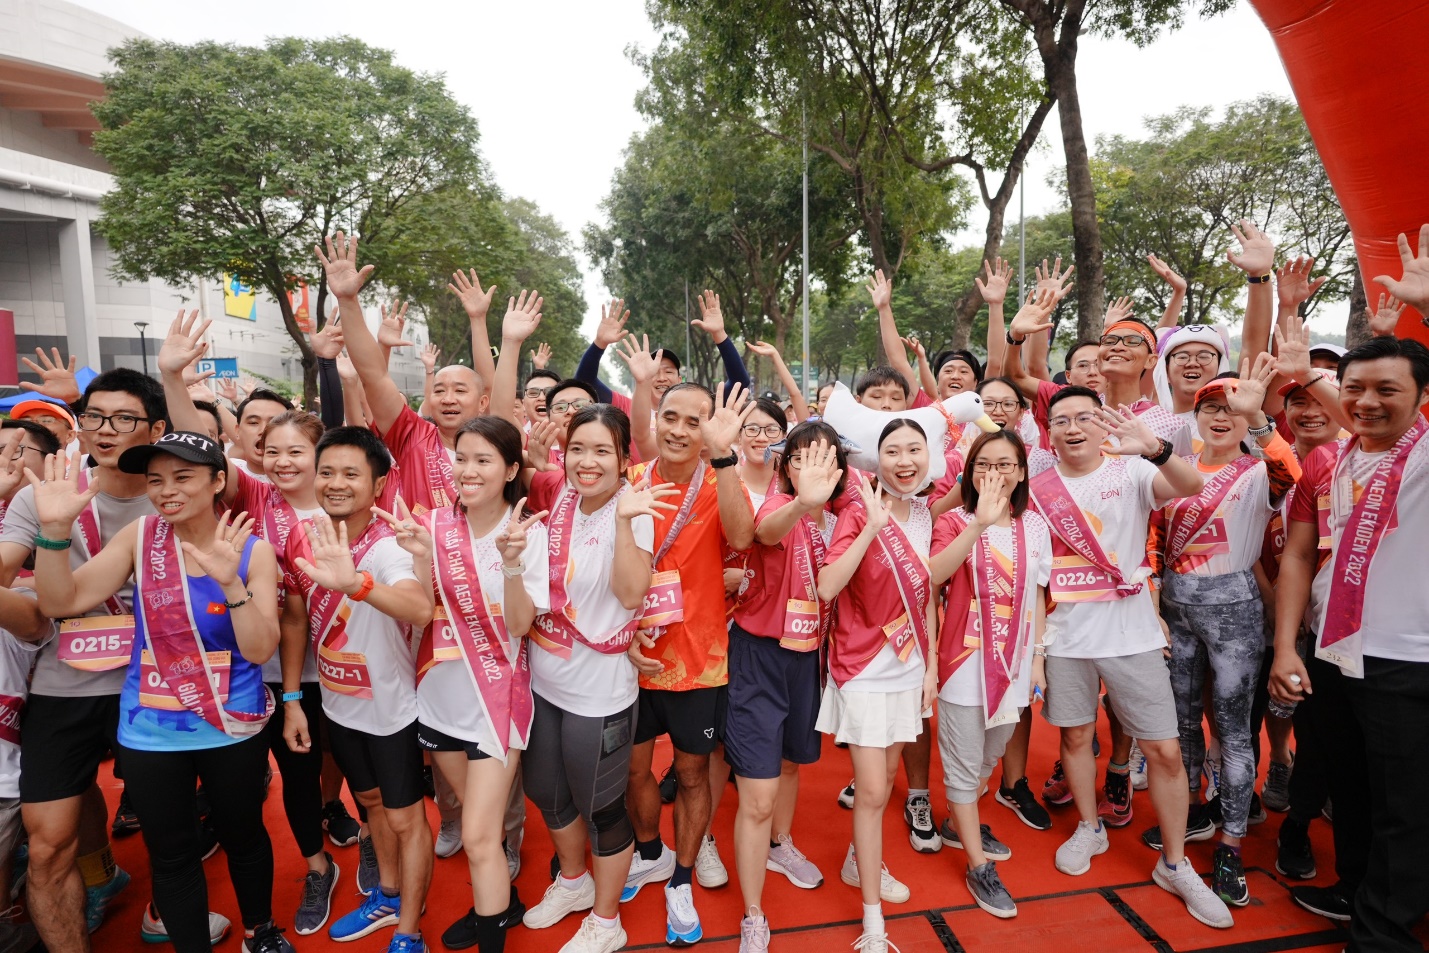 Giới trẻ “chen chân” đổ về ngày hội văn hóa Việt - Nhật tại AEON Tân Phú - Ảnh 1.